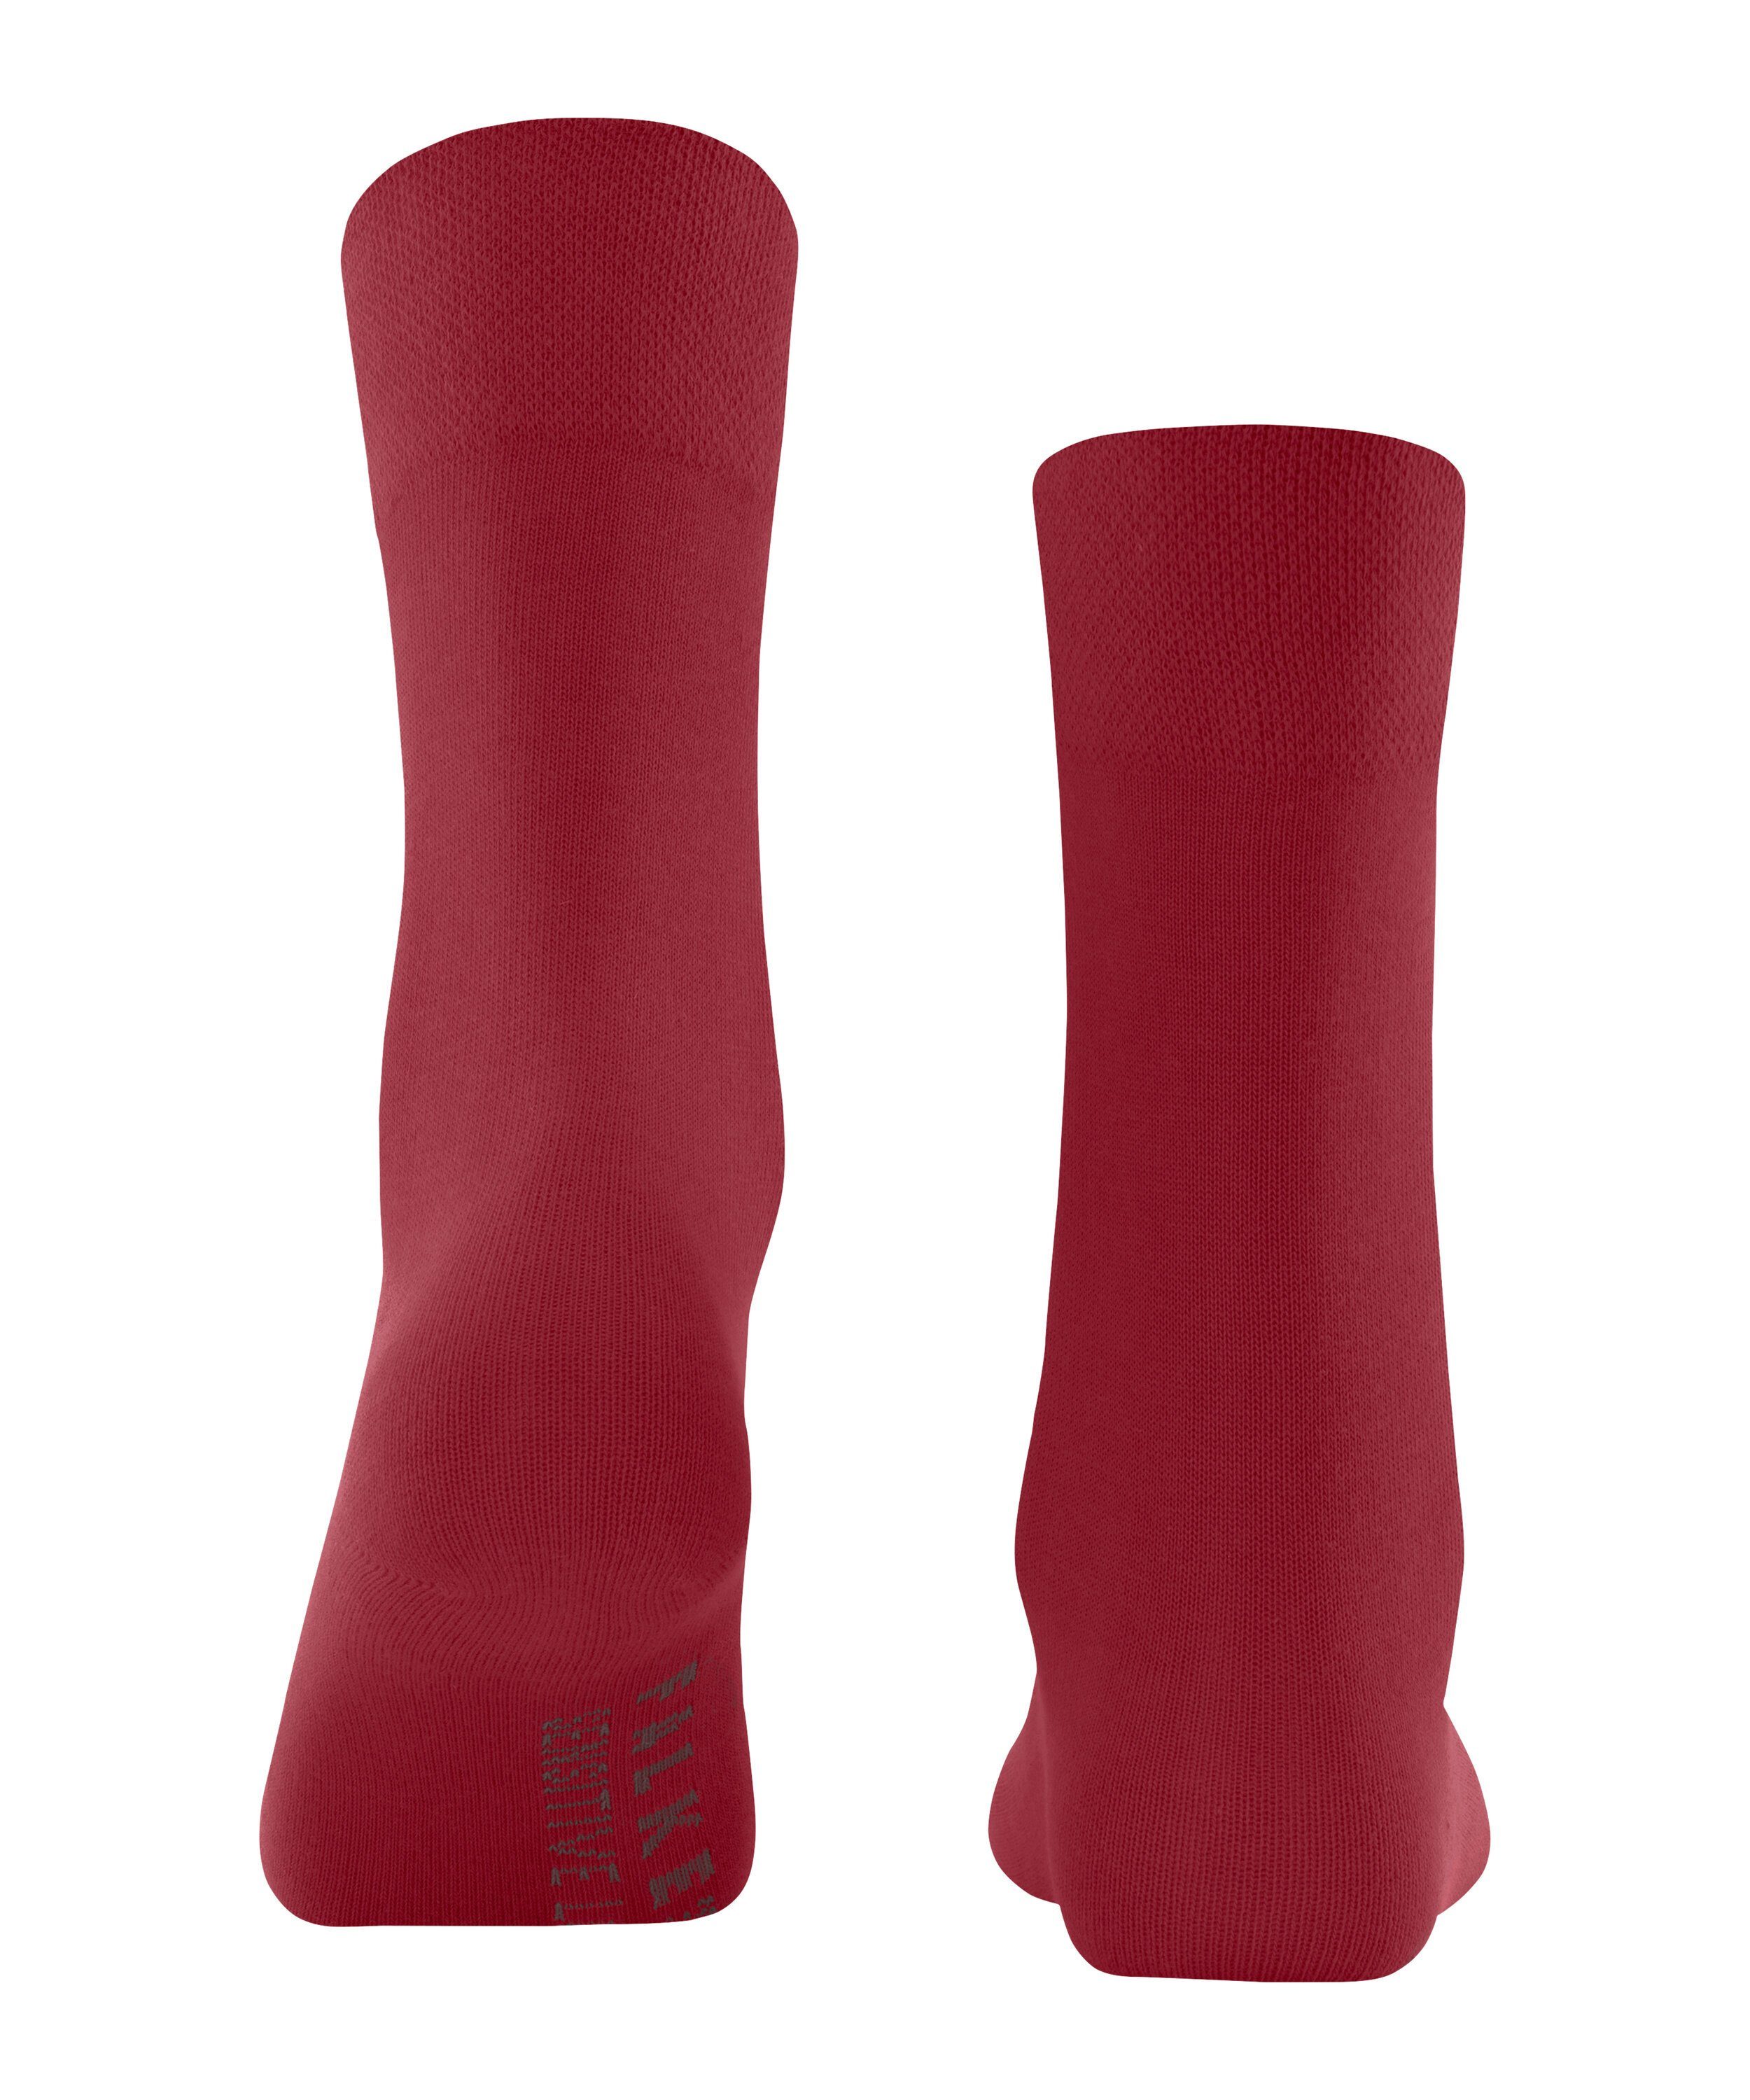 FALKE Socken Sensitive London (8228) scarlet (1-Paar)